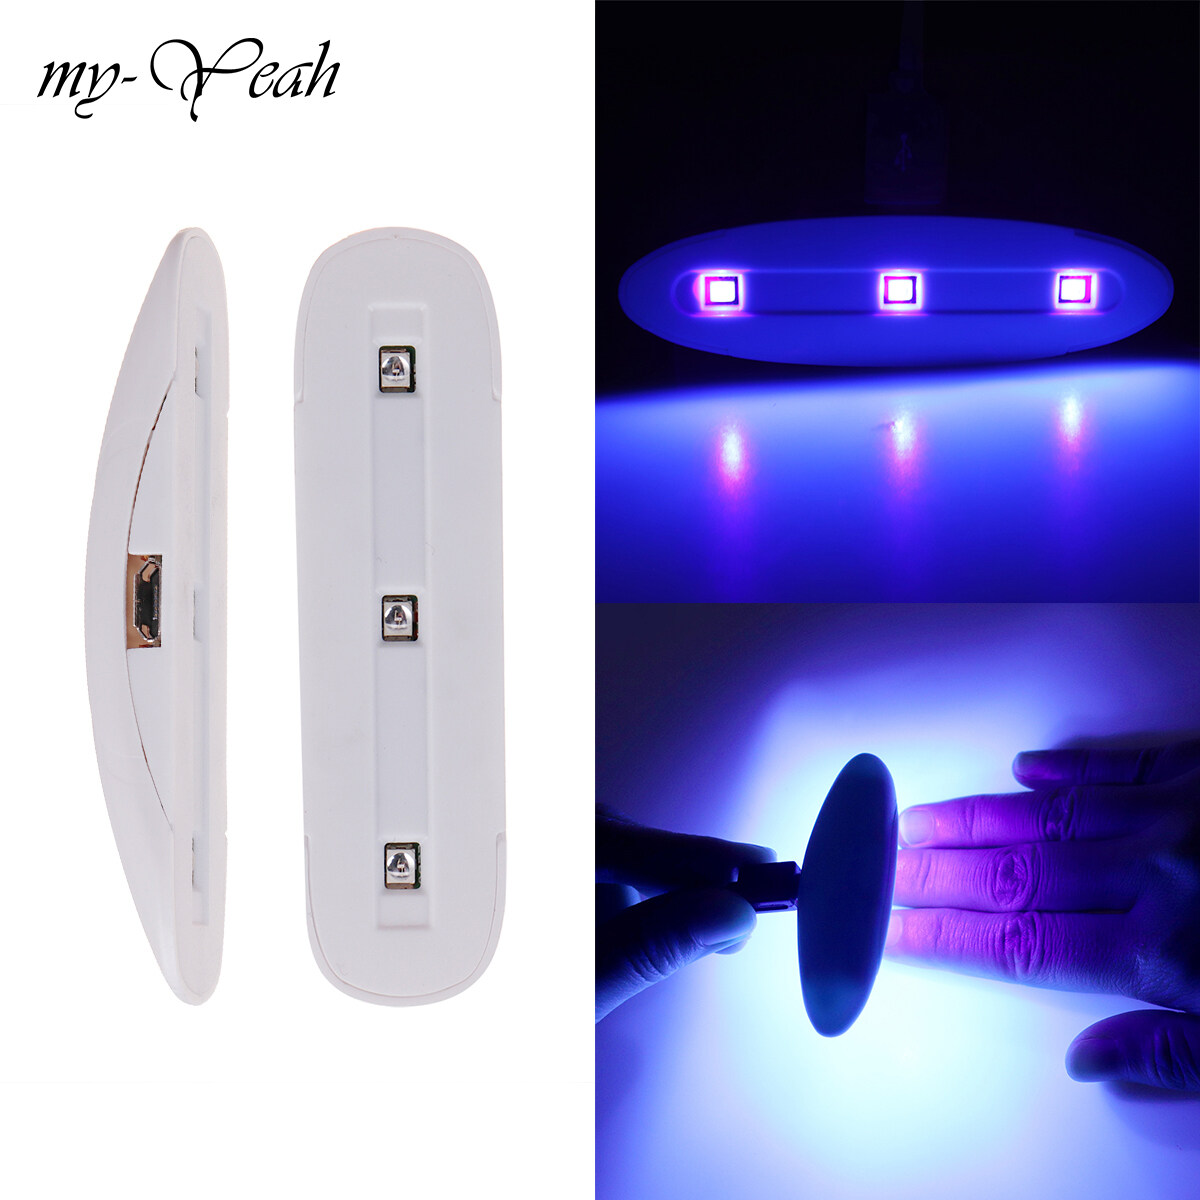 Hình ảnh Myyeah 3 Wát Trắng Đa Chức Năng Xách Tay USB Mini Nail Art Máy Sấy Gel UV Hong Khô Làm Bóng Oval Đèn LED Bằng Điện Tự Lắp Ráp Dụng Cụ Làm Móng Tay